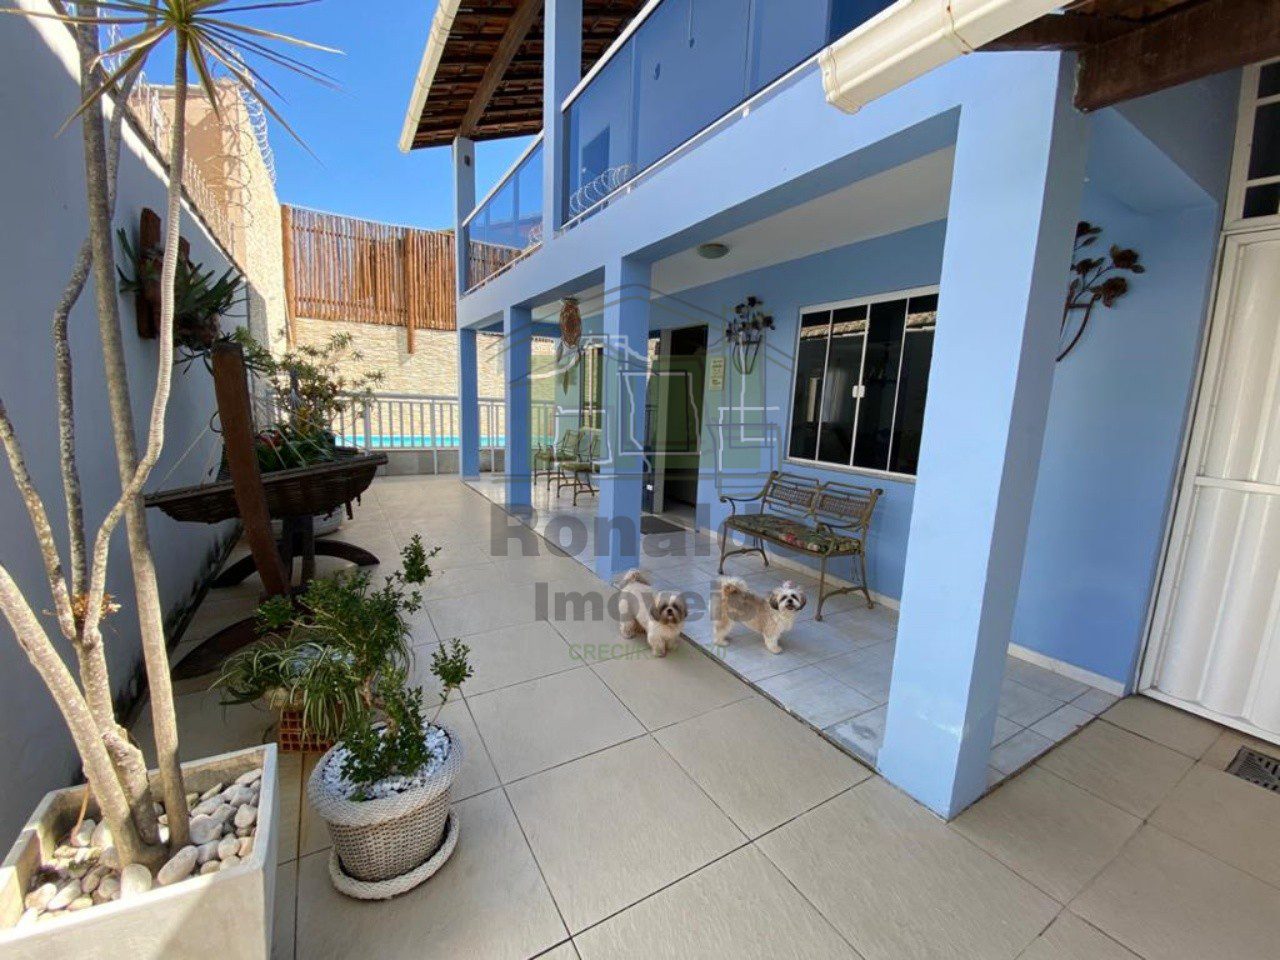 R285 – Casa Independente, 06 quartos sendo 03 suítes, Peró – Cabo Frio – RJ